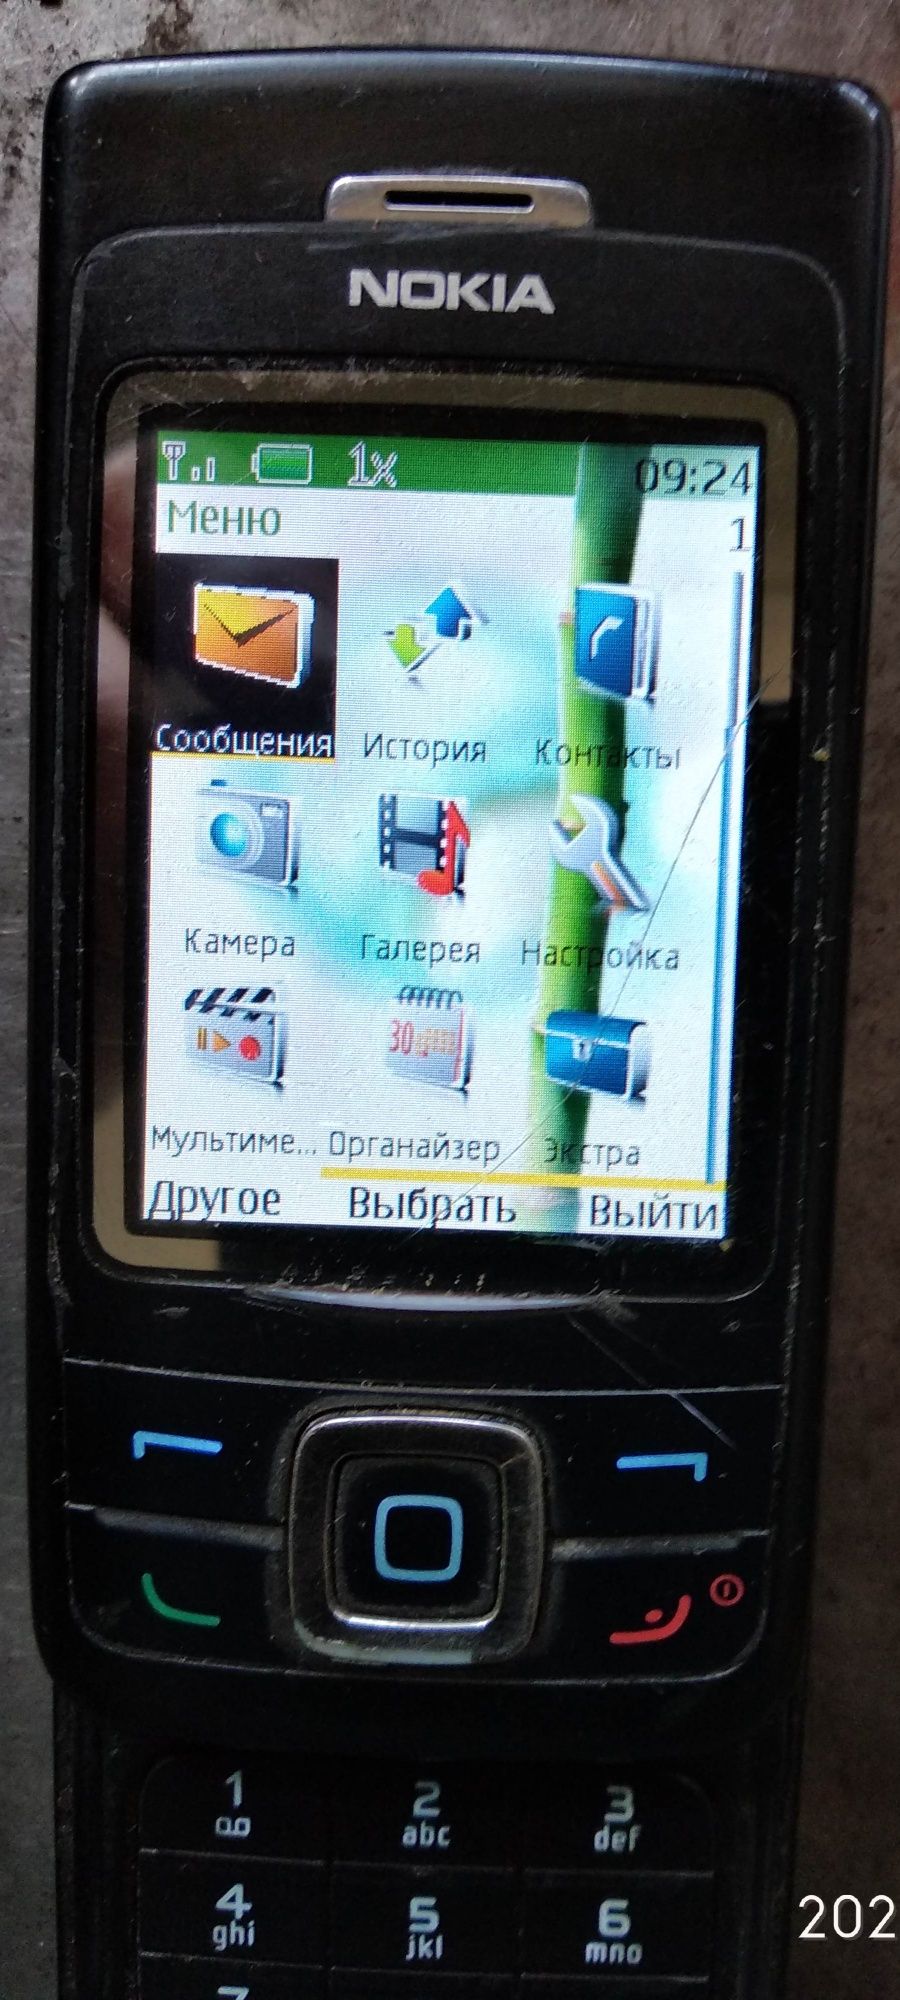 Телефон cdma Nokia 6265 рабочий.